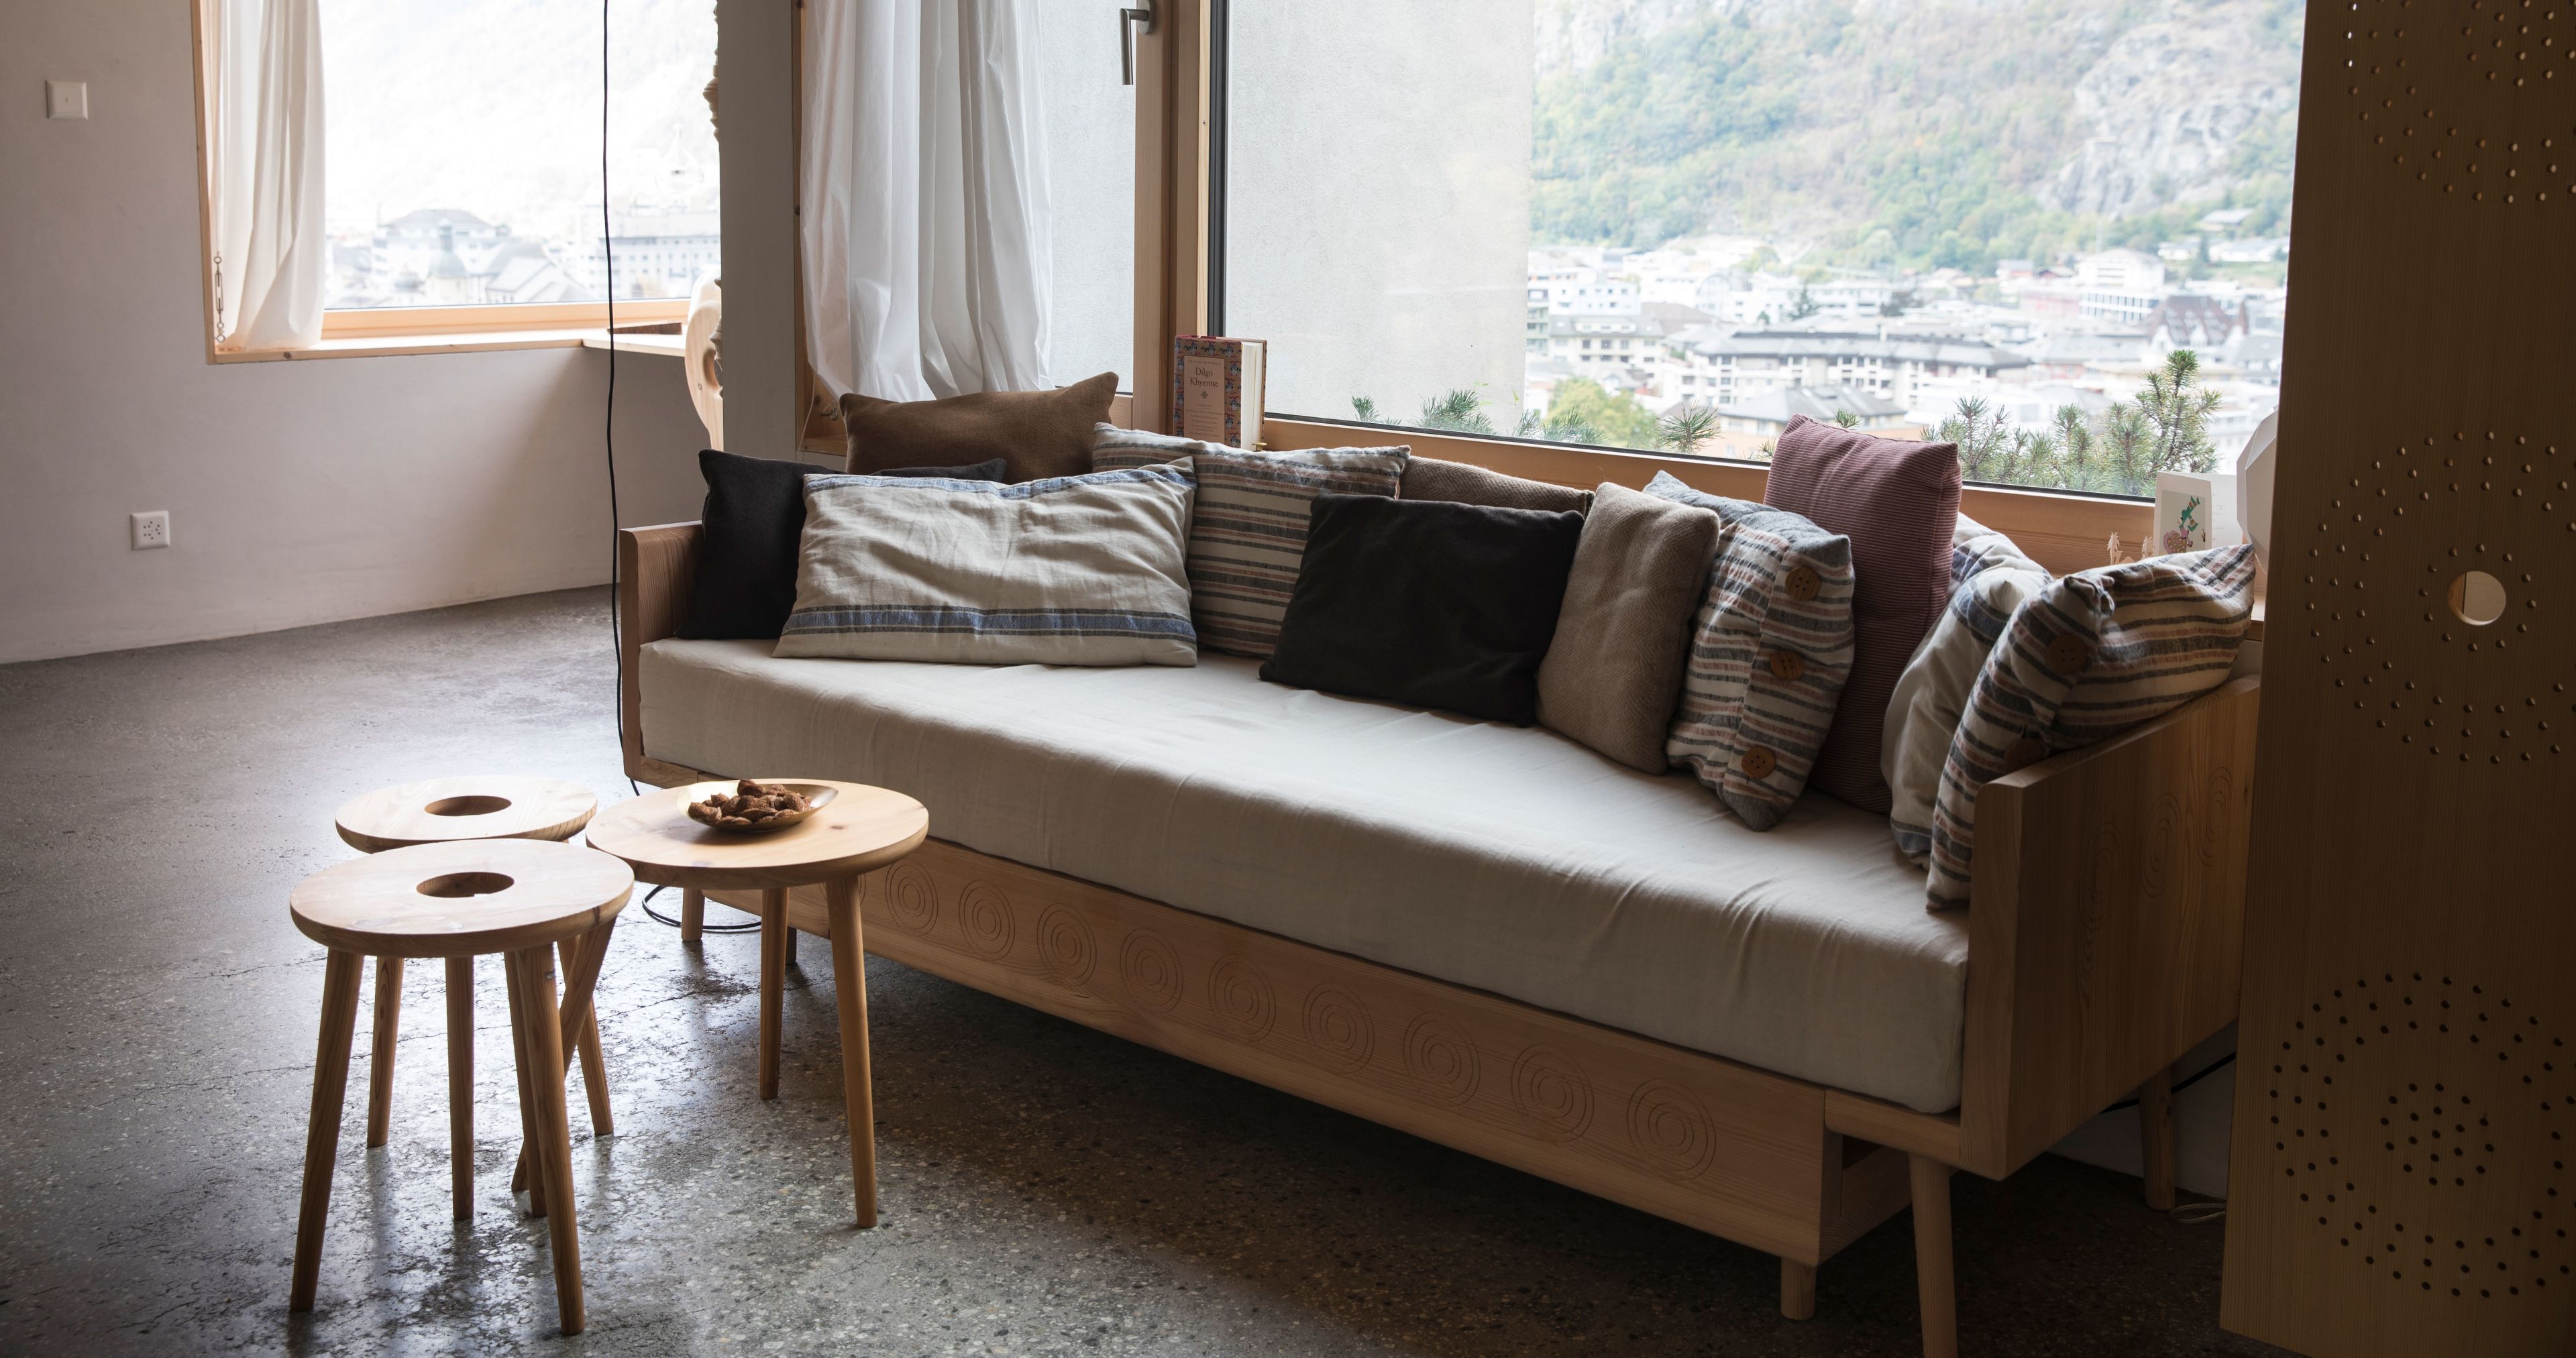 Valaisan furniture - Stool and bed in the "Gütschi" style Valais Wallis Schweiz Switzerland Suisse